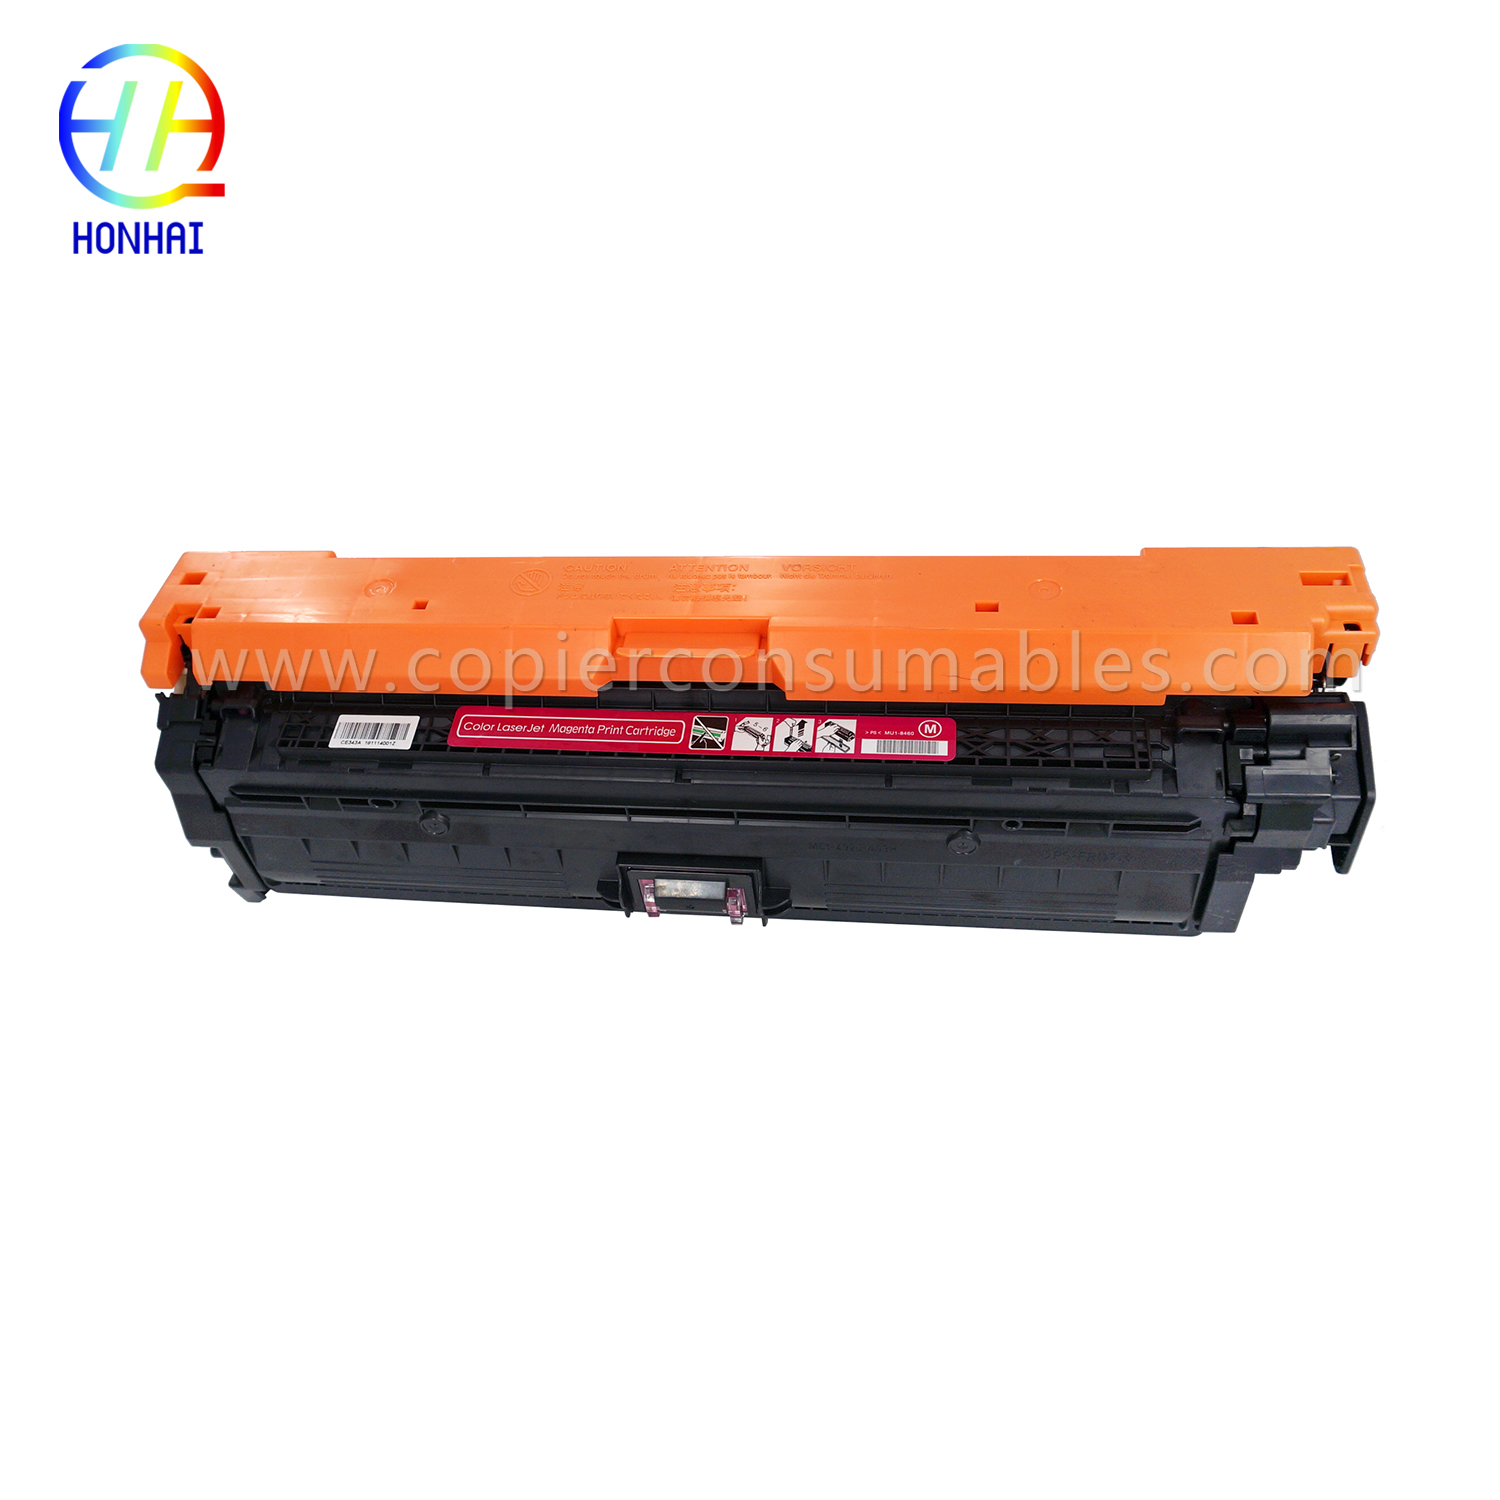 Cartuccia toner per HP LaserJet Enterprise 700 Color M775dn M775f M775z M775z CE343A 651A